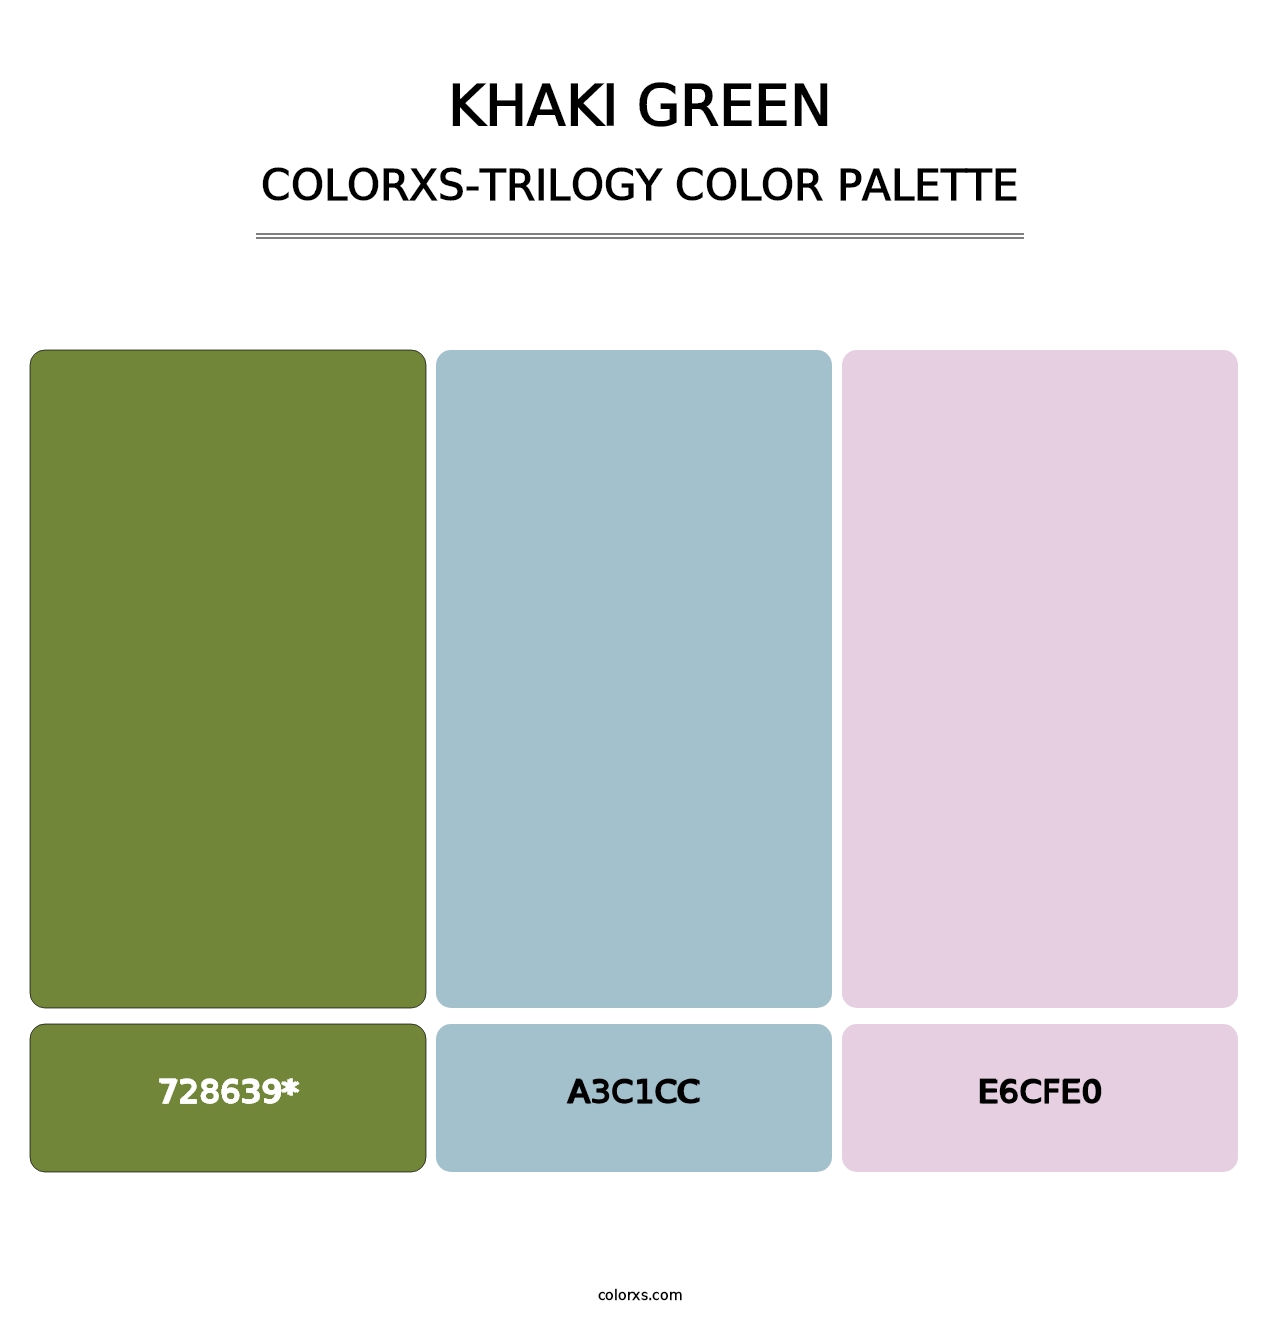 Khaki Green - Colorxs Trilogy Palette